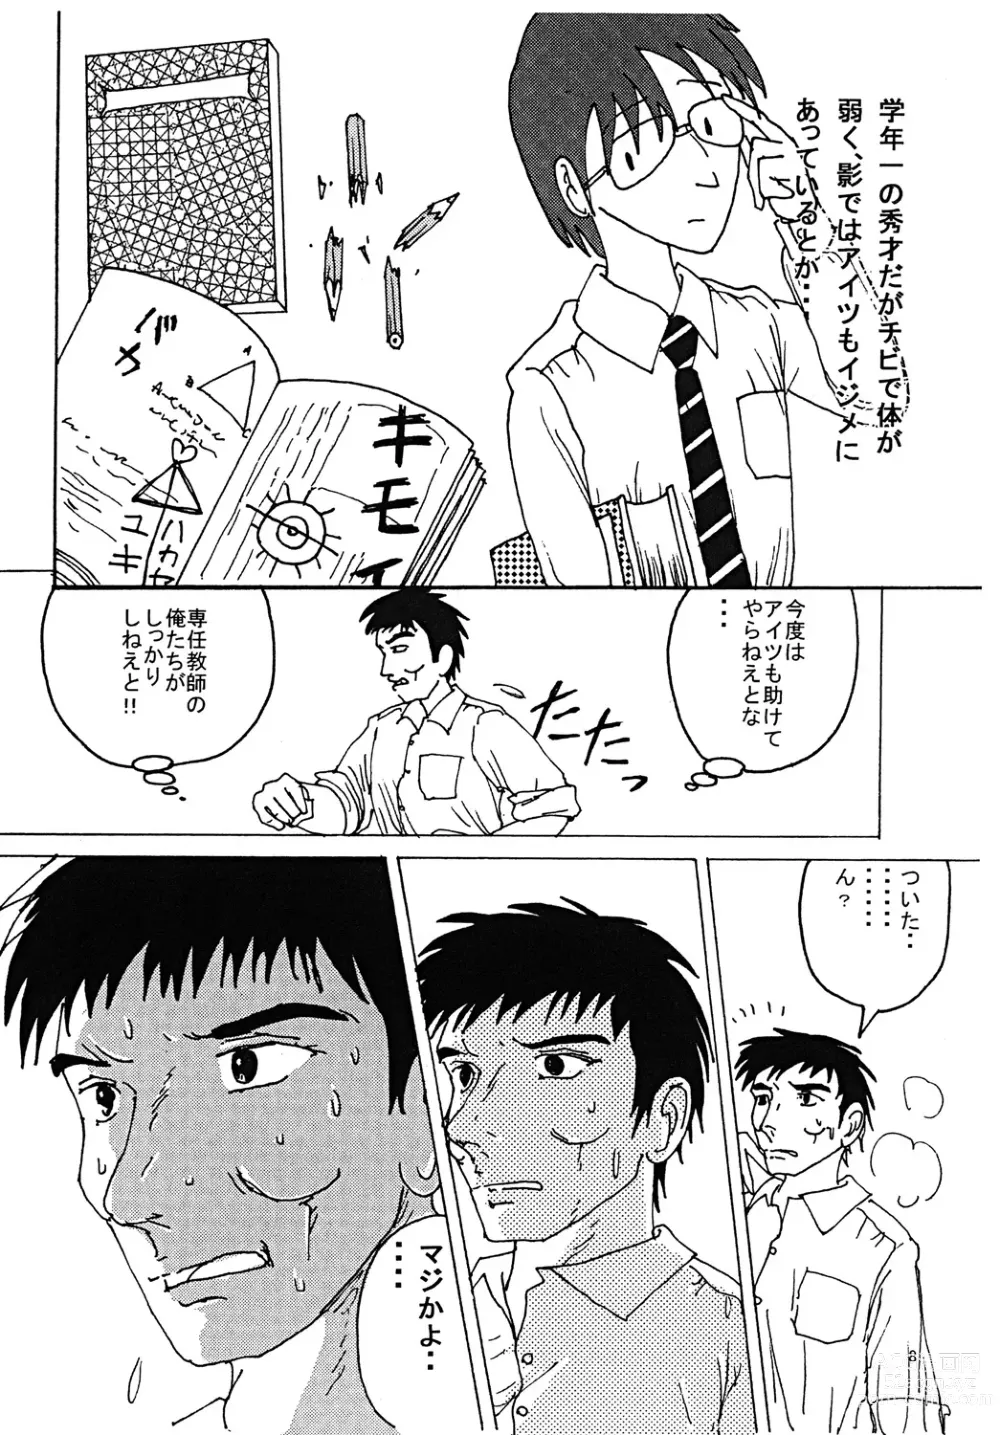 Page 7 of doujinshi Mune Ippai no Dizzy